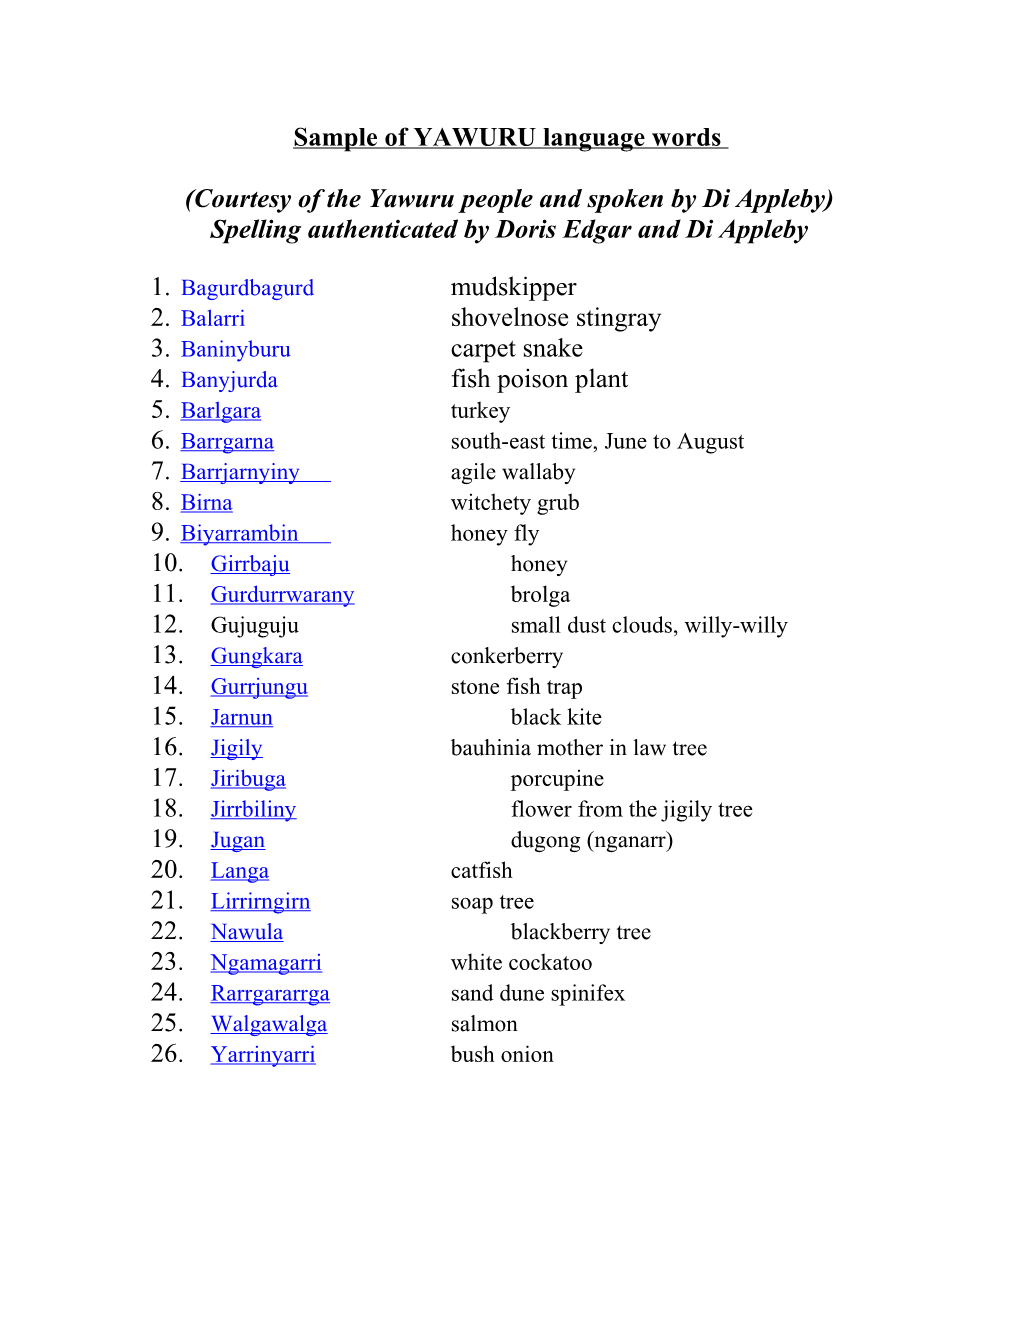 Sample of YAWURU Language Words